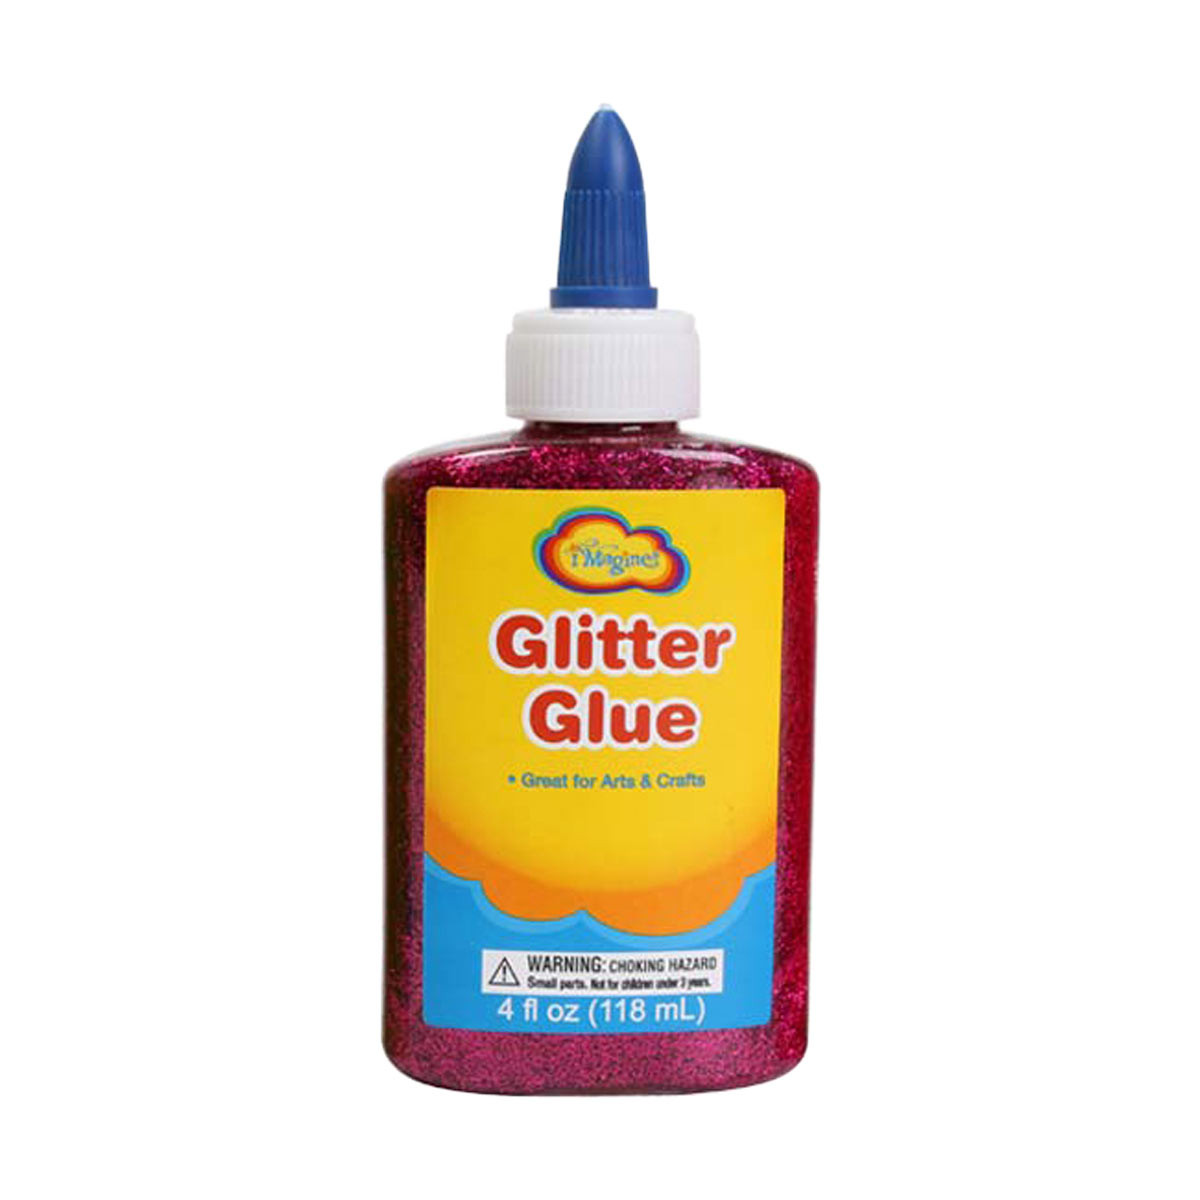 Imagine Glitter Glue Bottle, 4.9 oz.